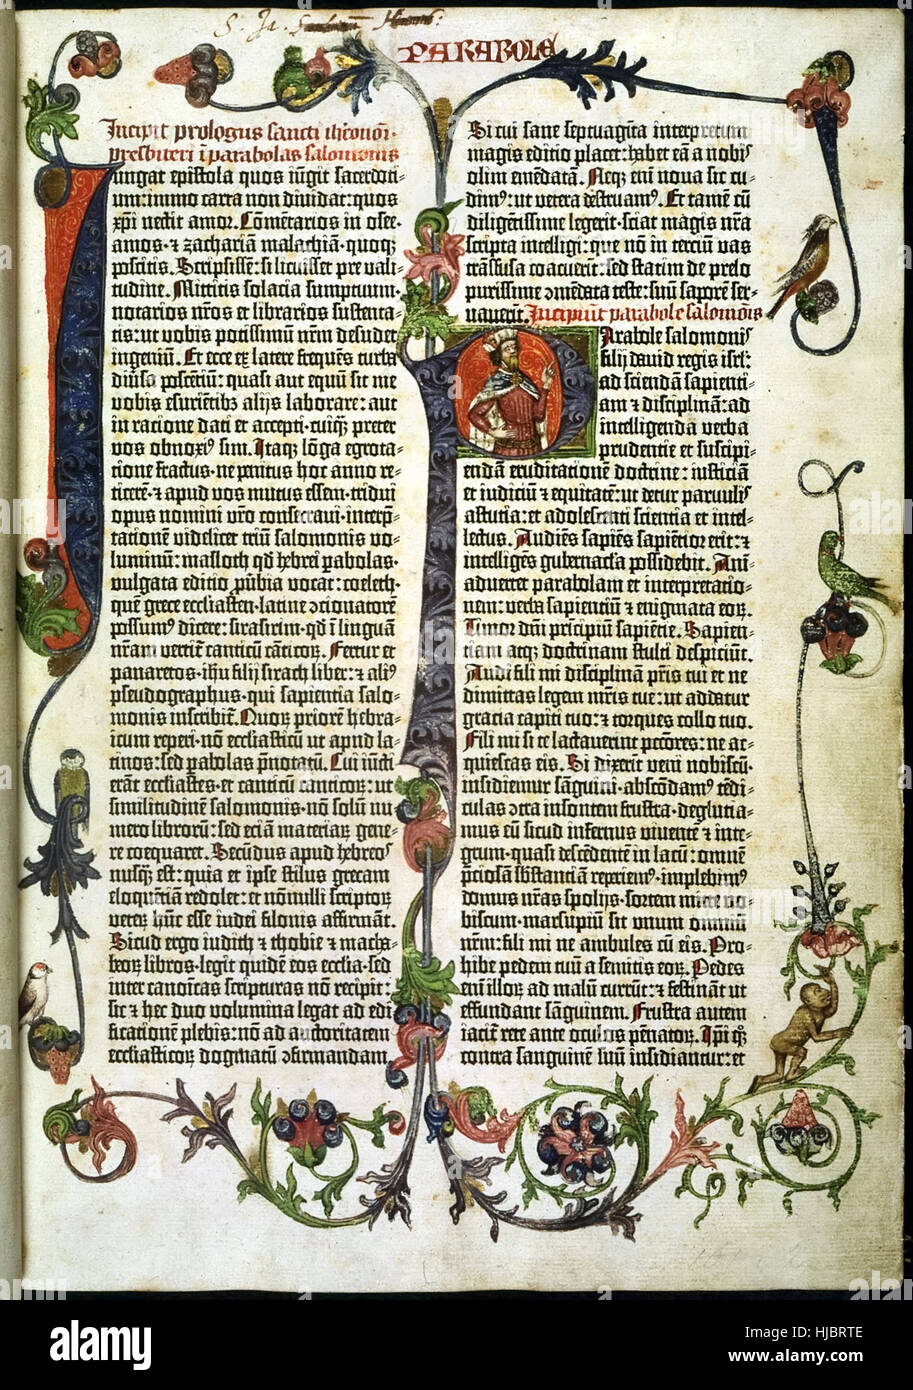 Página de la "Biblia de Gutenberg" producidos en masa el primer libro impreso en Maguncia, Alemania, en 1455 por Johann Gutenberg. Página muestra mostrando un gran iluminado 'I' y 'P' con un retrato del rey Salomón. Consulte la descripción para obtener más información. Foto de stock